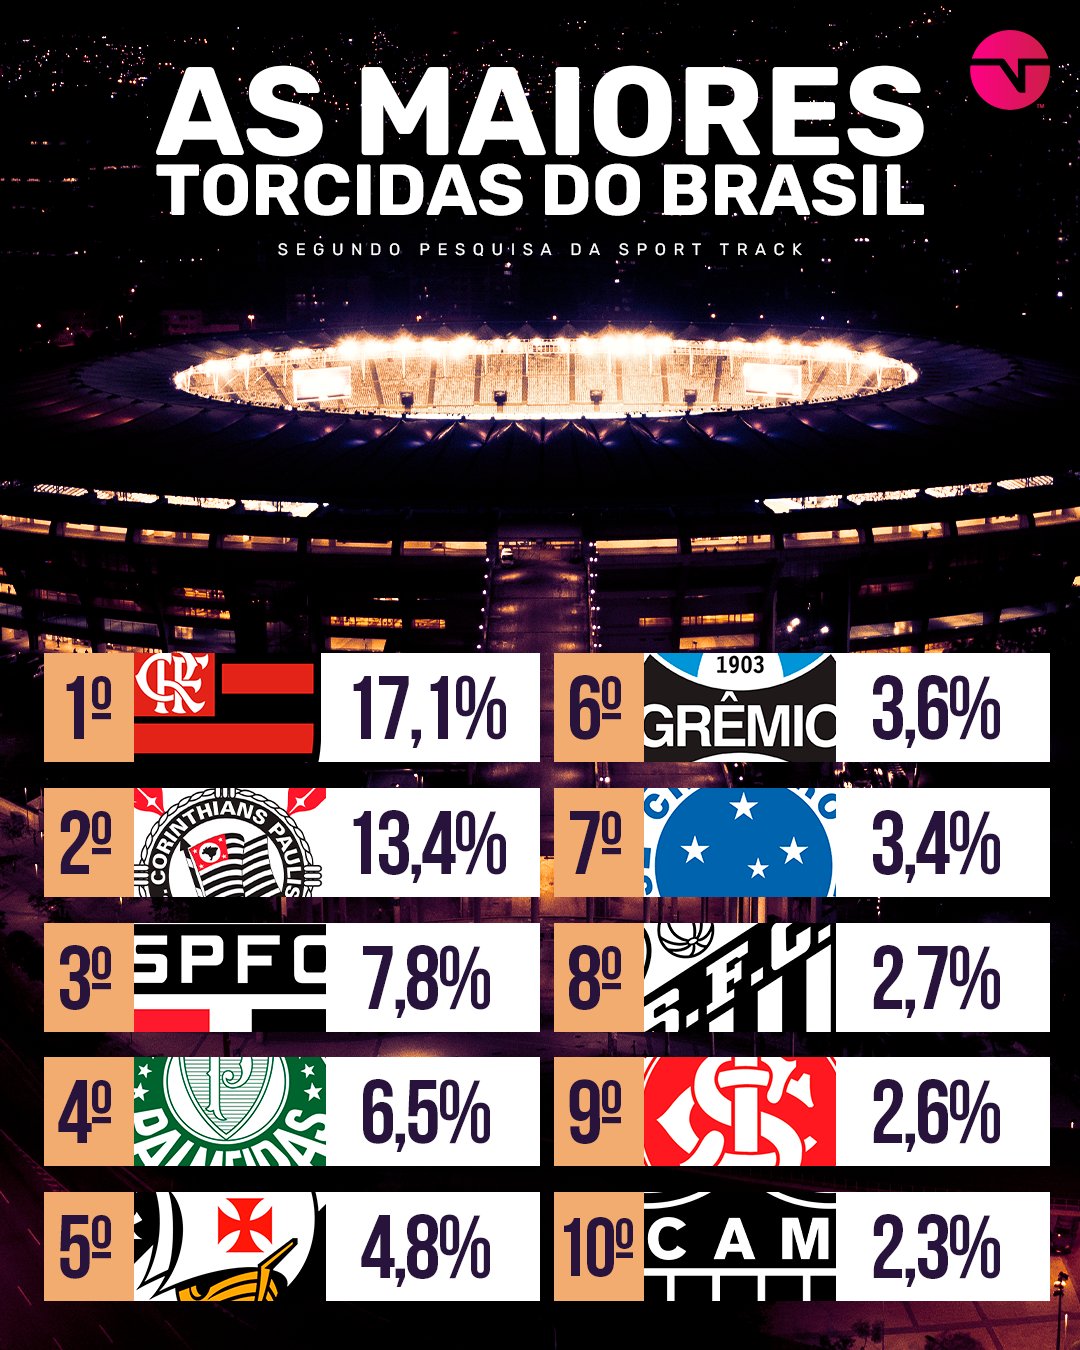 TNT Sports Brasil - PALMEIRAS NO TOPO! 🐷🟢⚪ Se liga nesse ranking dos  melhores clubes do Brasil! Seu time tá nessa lista, torcedor? Crédito: Opta  Power Ranking